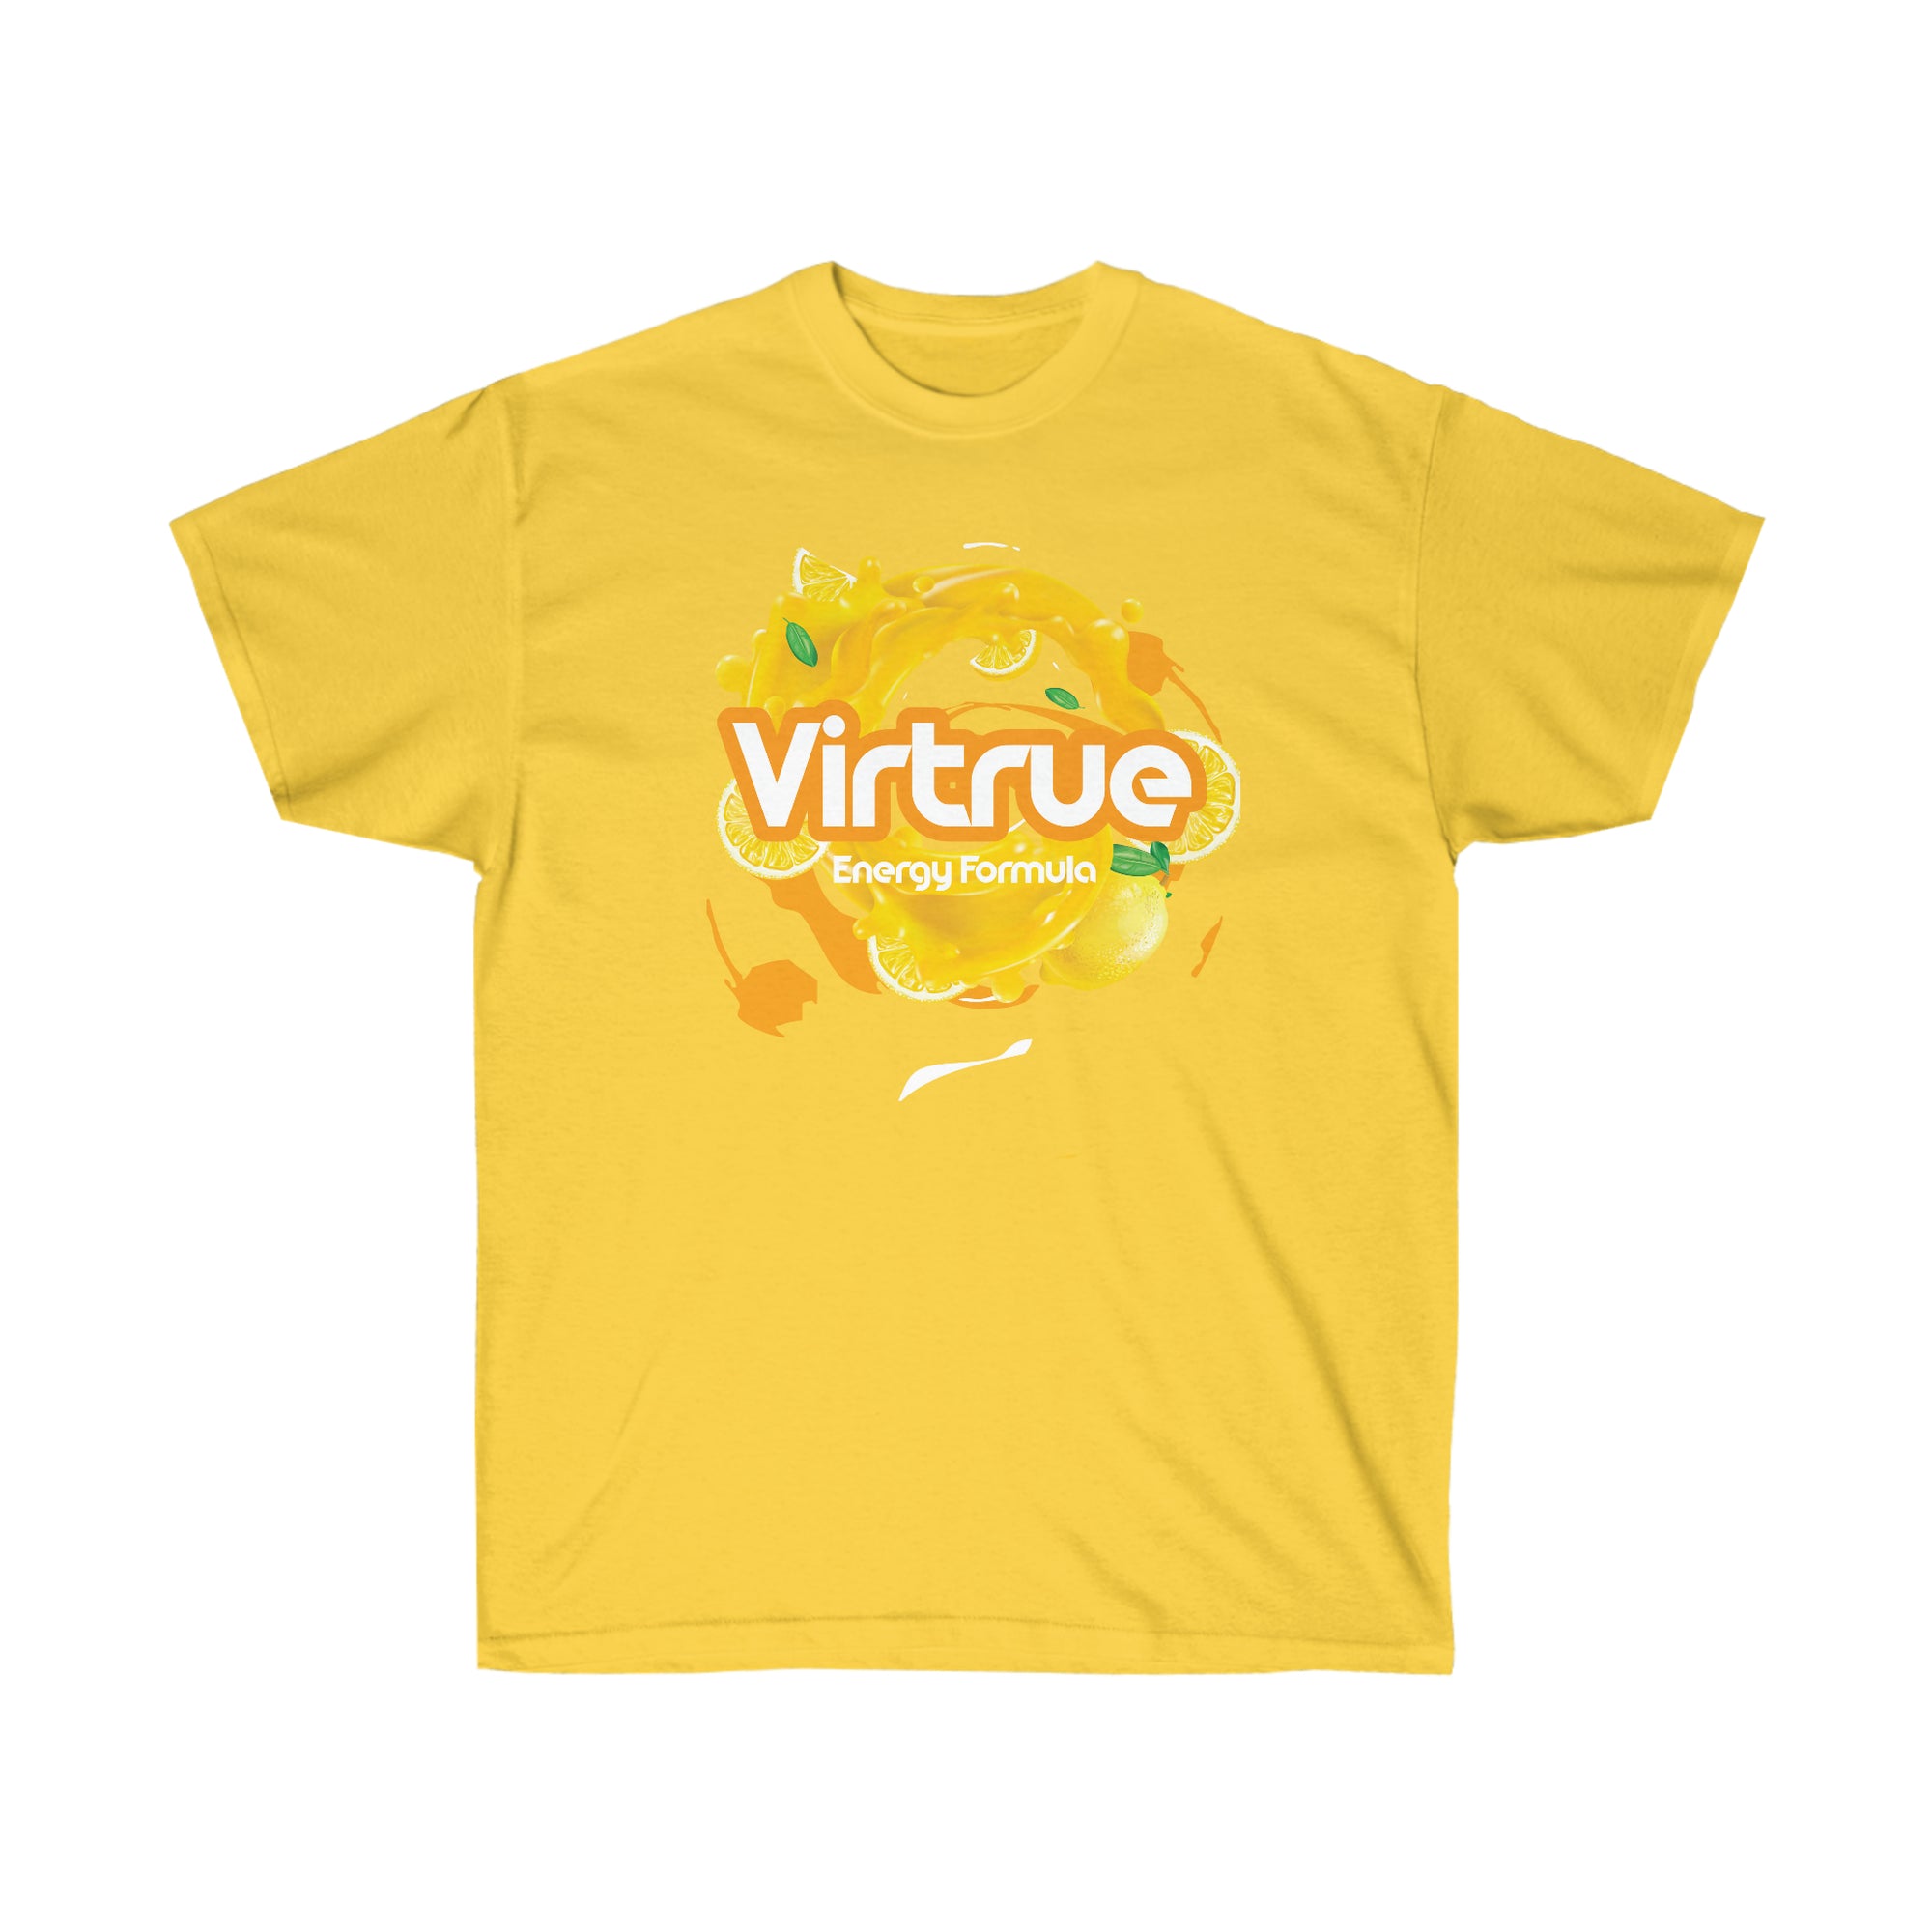 Virtrue Lemonade Tee